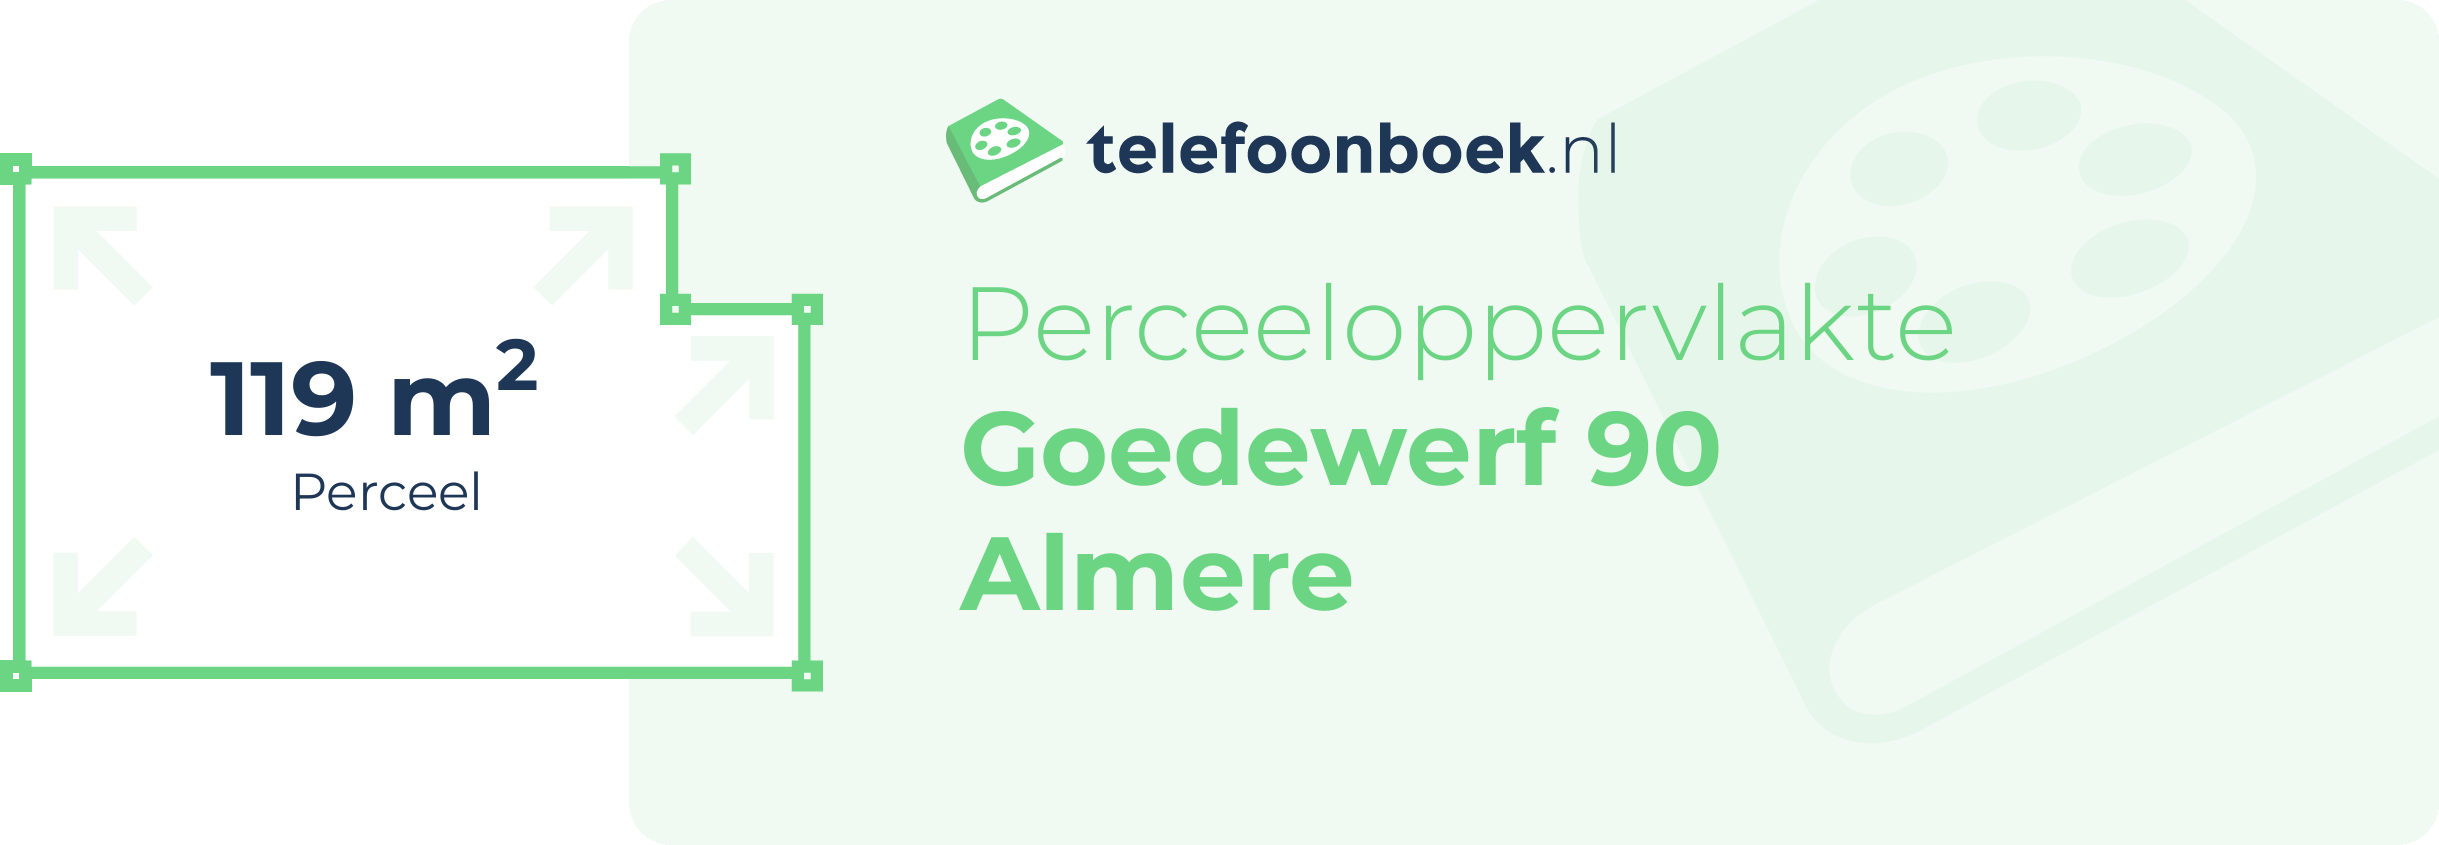 Perceeloppervlakte Goedewerf 90 Almere